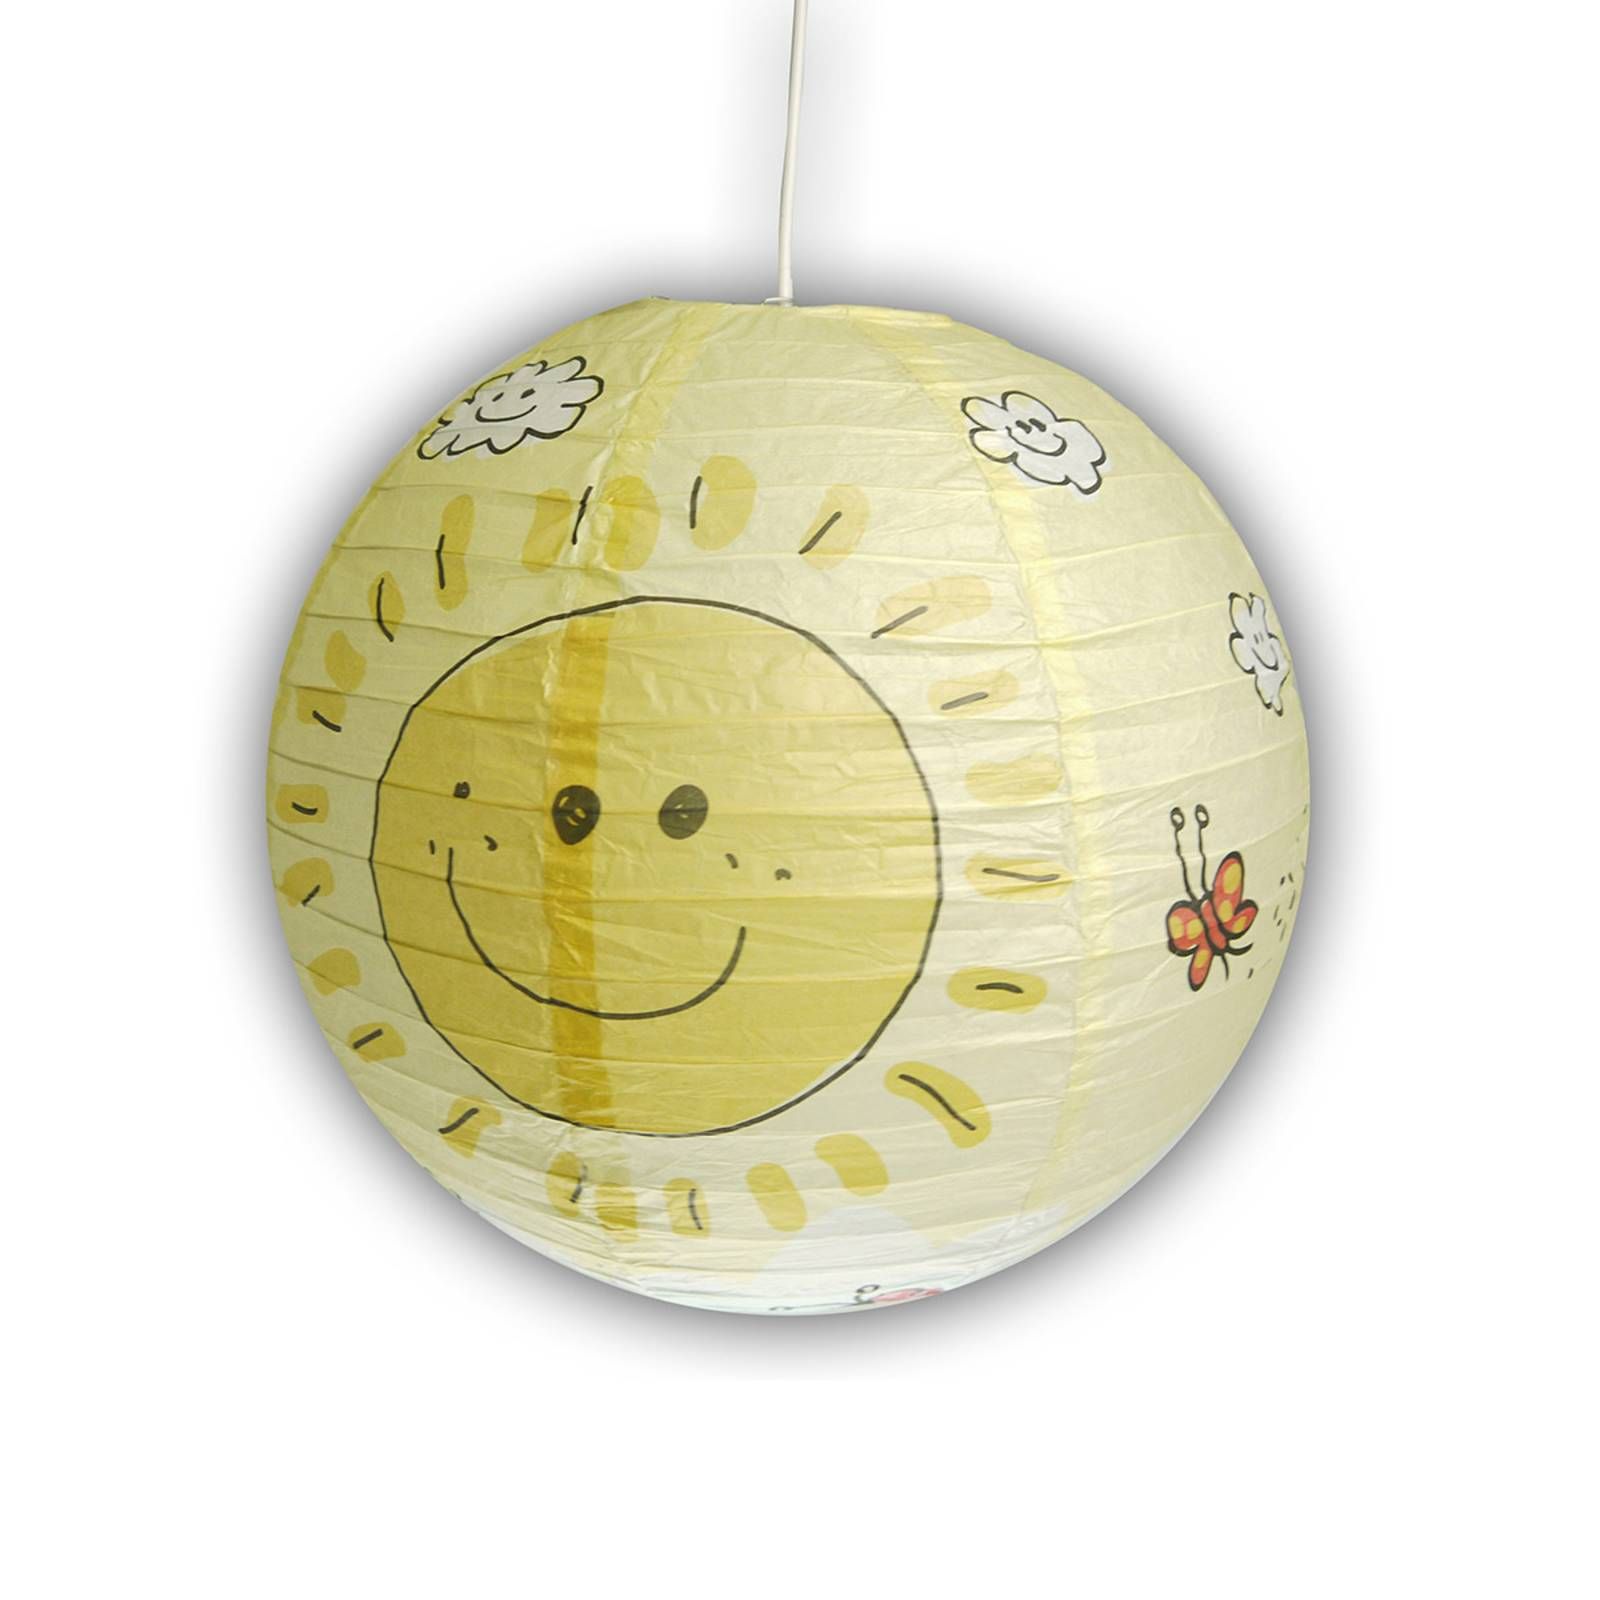 Niermann Standby Sunny - žiariaca závesná lampa pre deti, Detská izba, plast, papier, E27, 60W